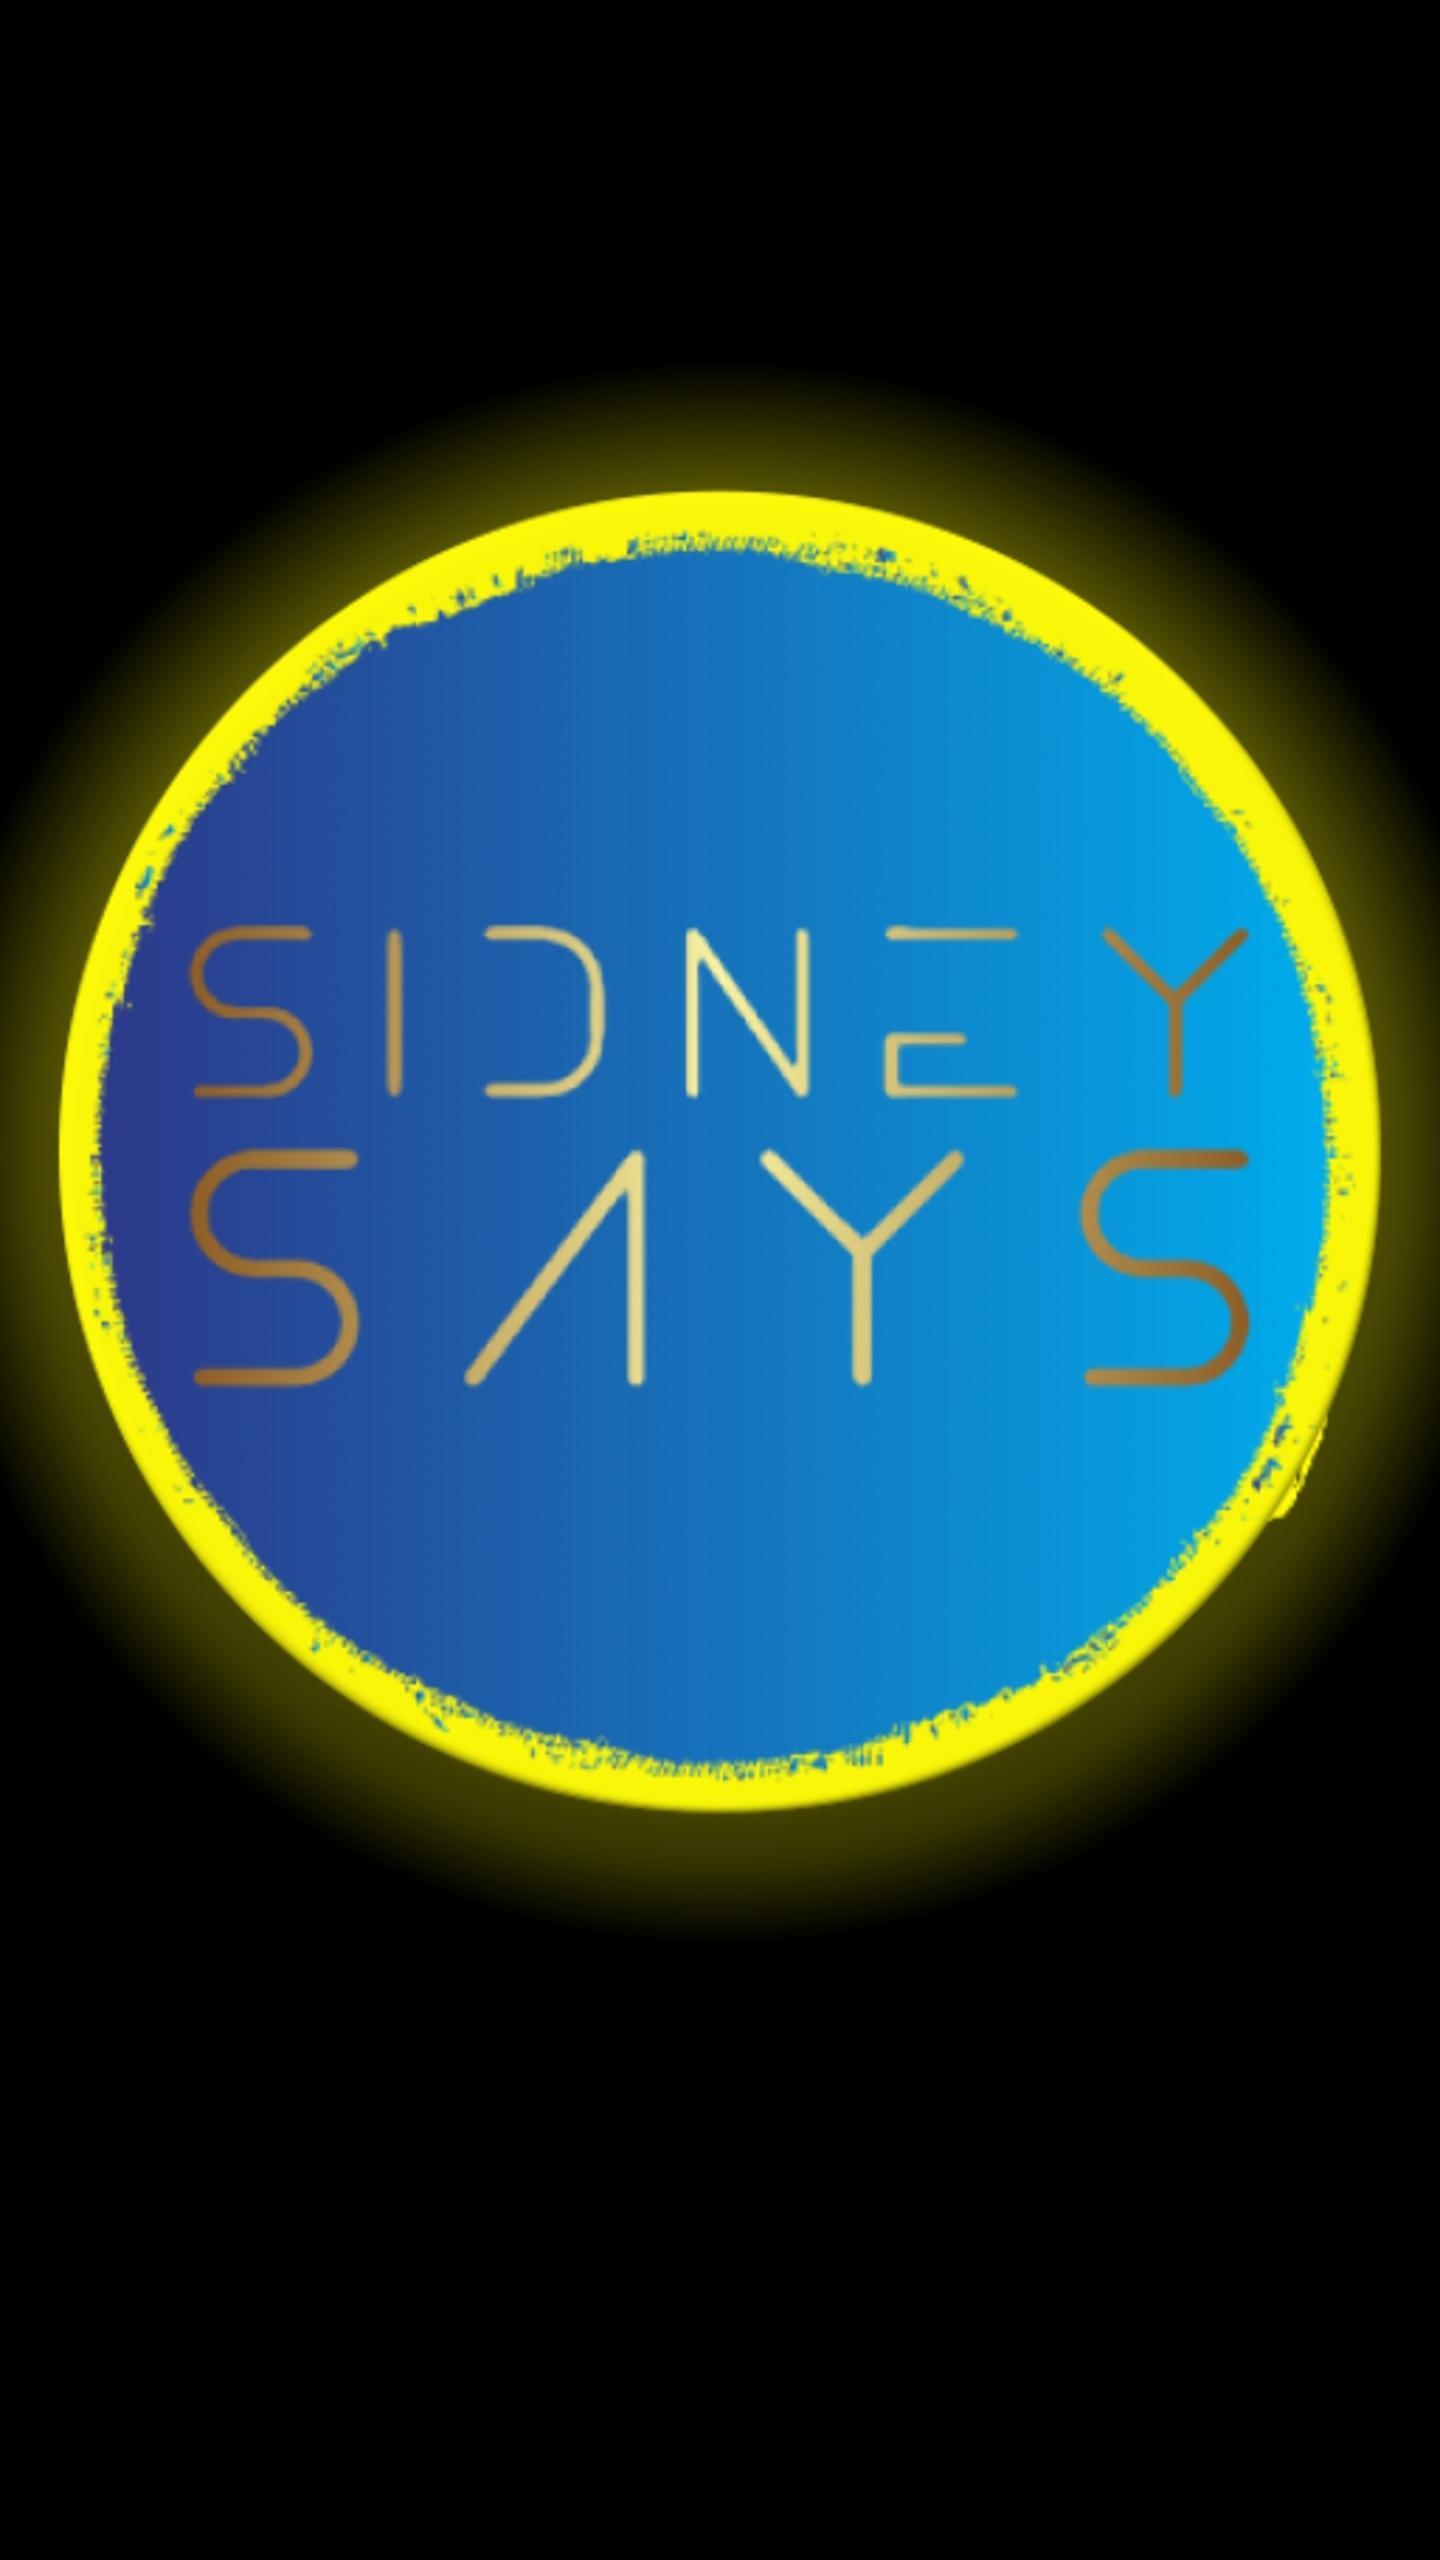 SidneySays A Simon memory game 1.3.1 Screenshot 1